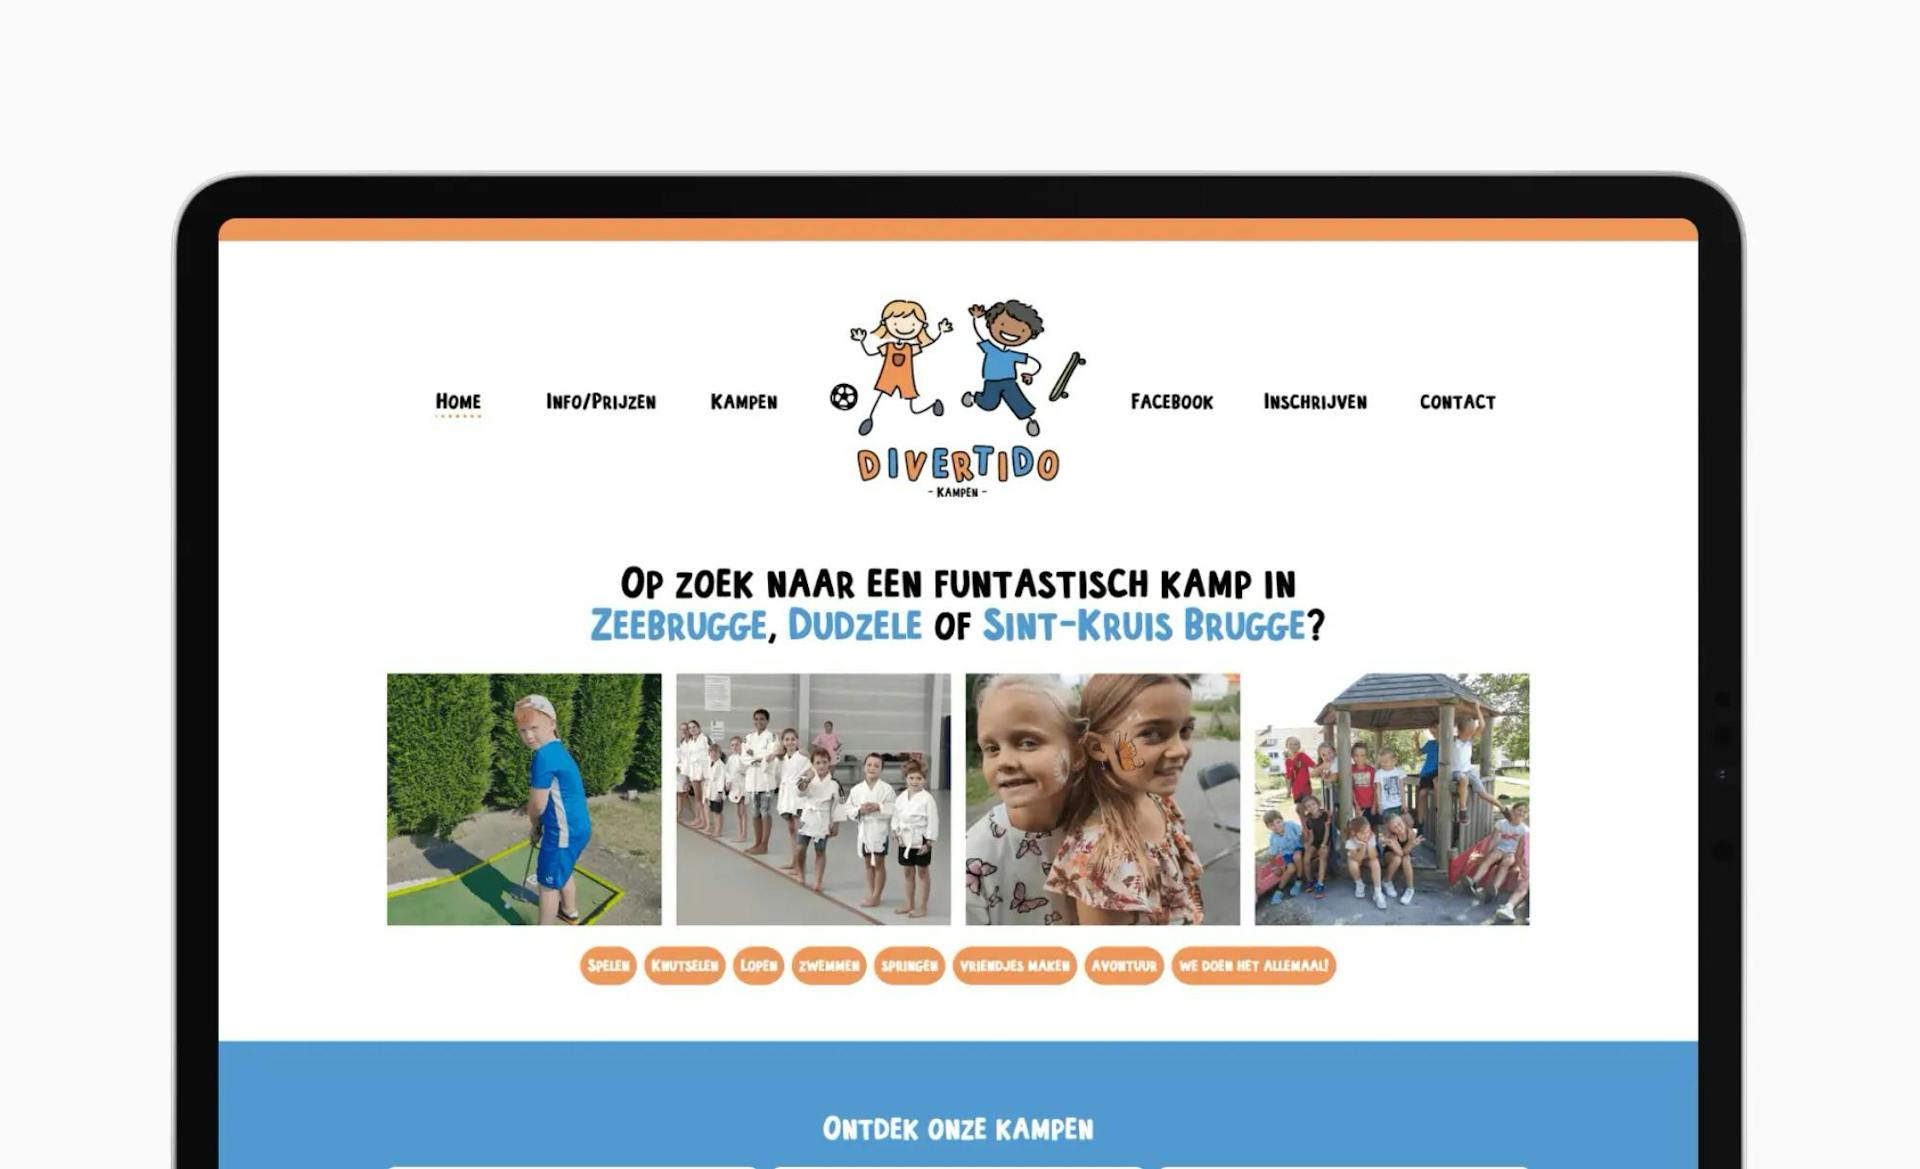 Divertido Kampen's website